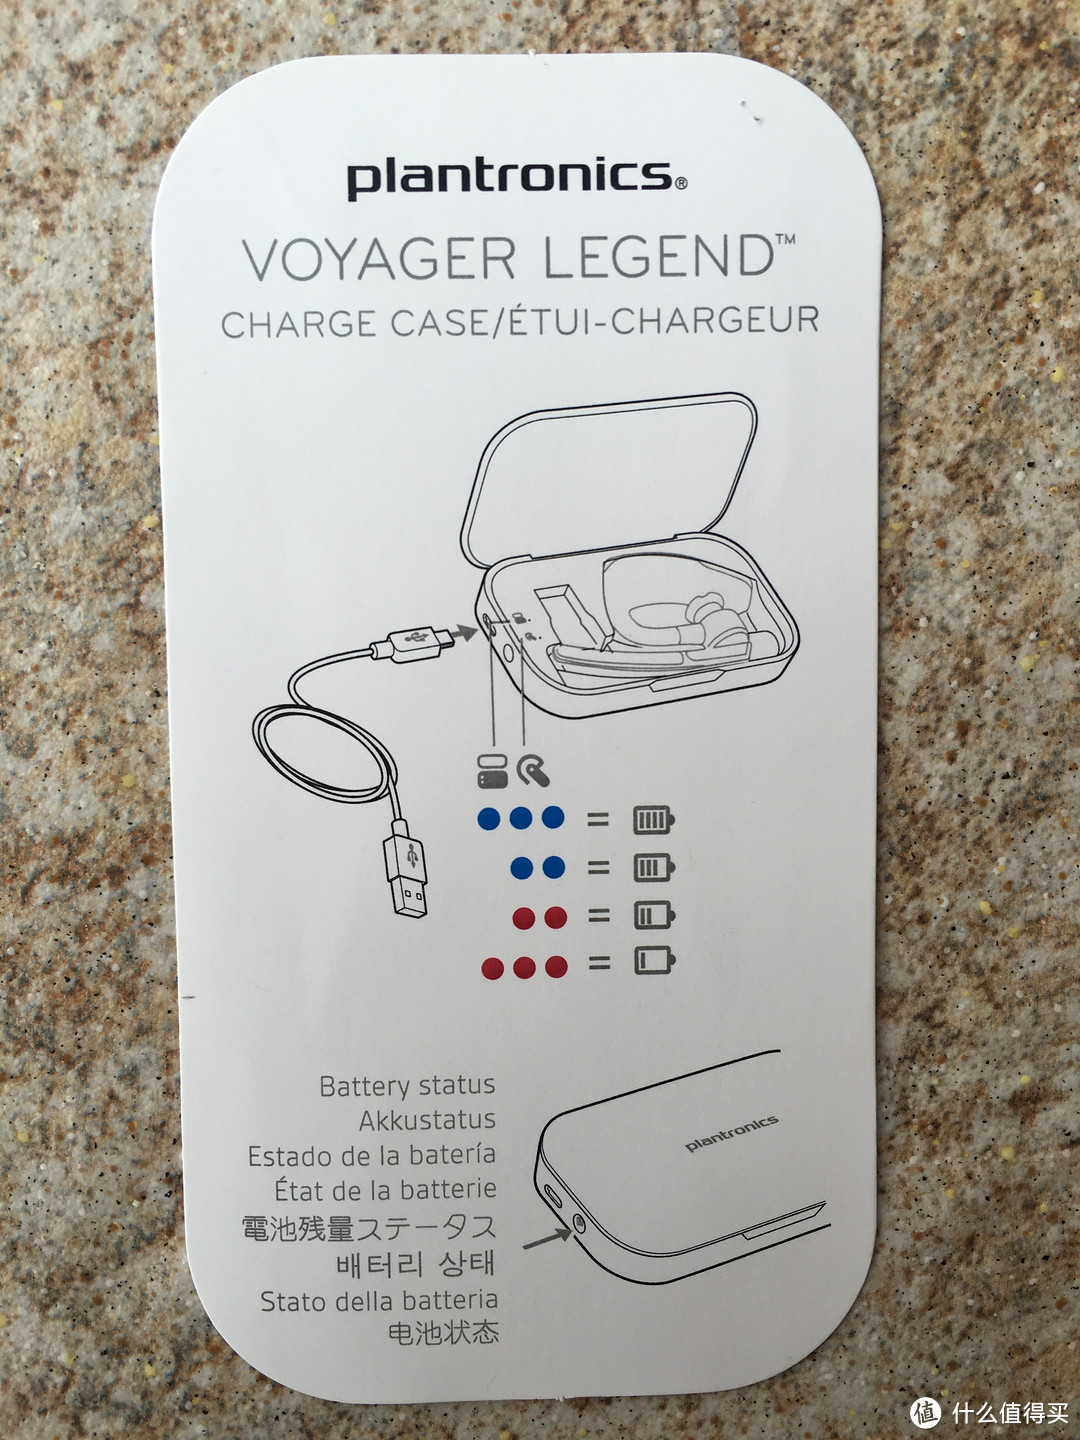 亚马逊海外购的缤特力传奇蓝牙耳机充电盒开箱